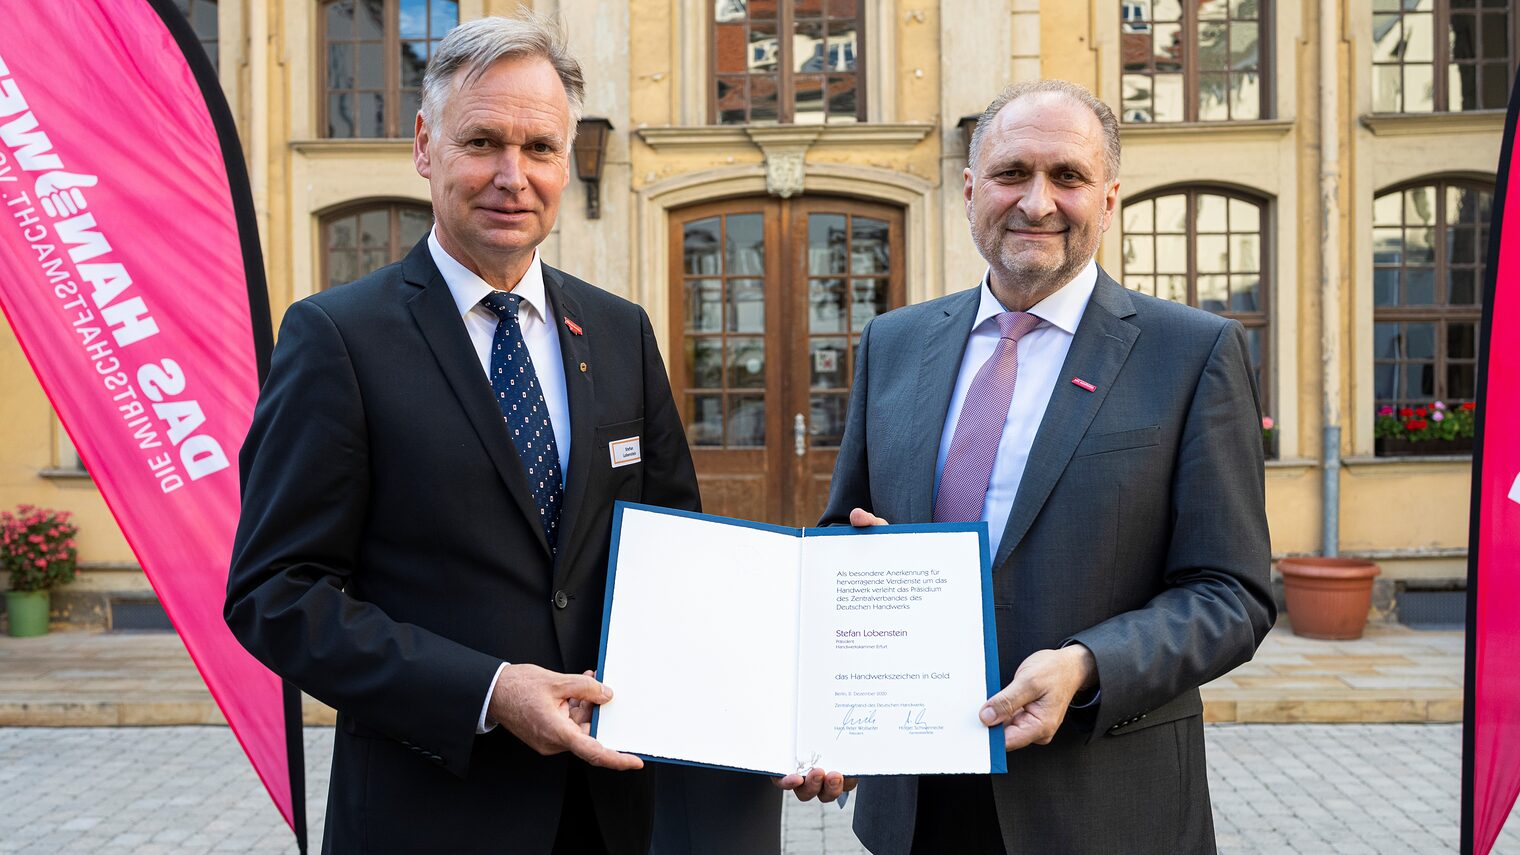 Persönlich überbrachte ZDH-Präsident Hans Peter Wollseifer seine Glückwünsche dem HWK-Präsidenten Stefan Lobenstein.